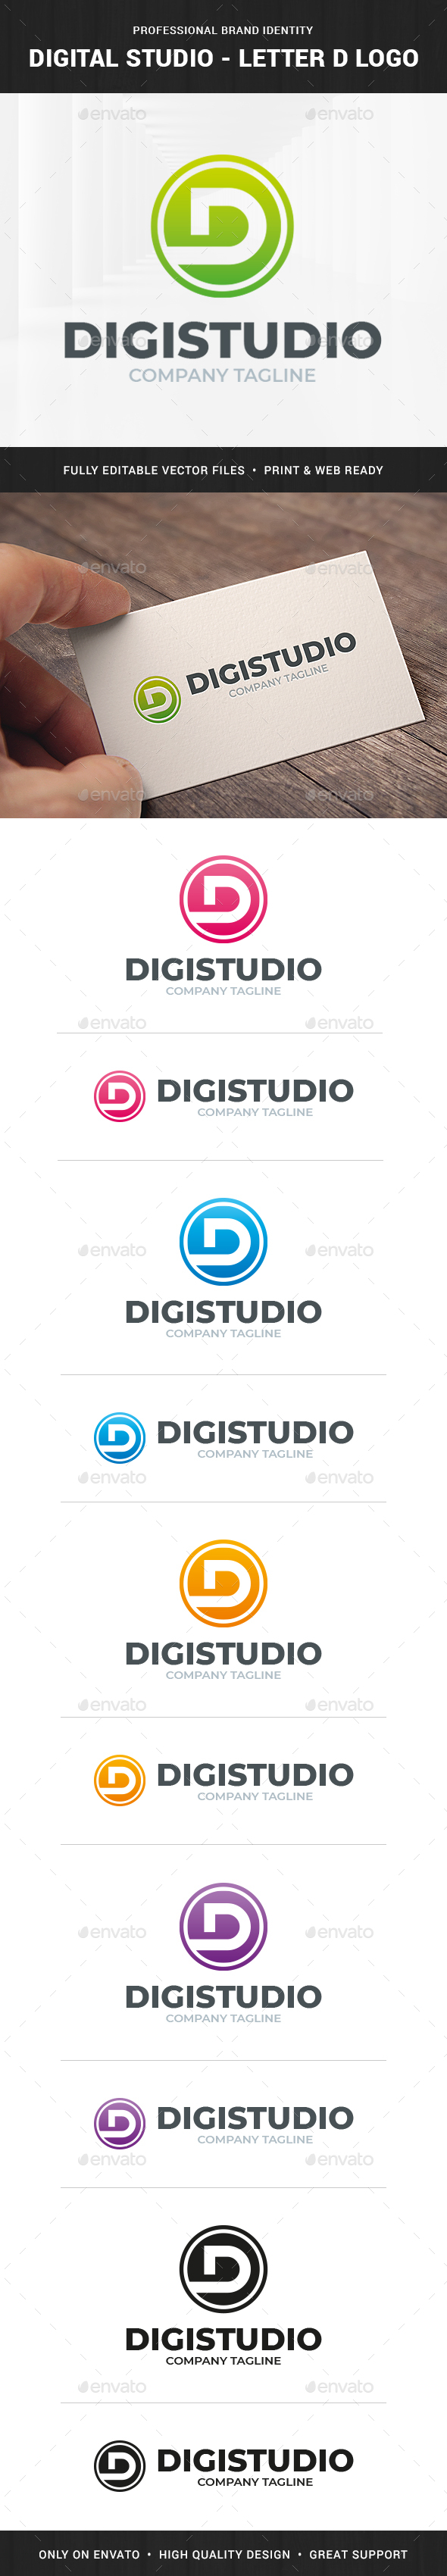 Digital Studio - Letter D Logo